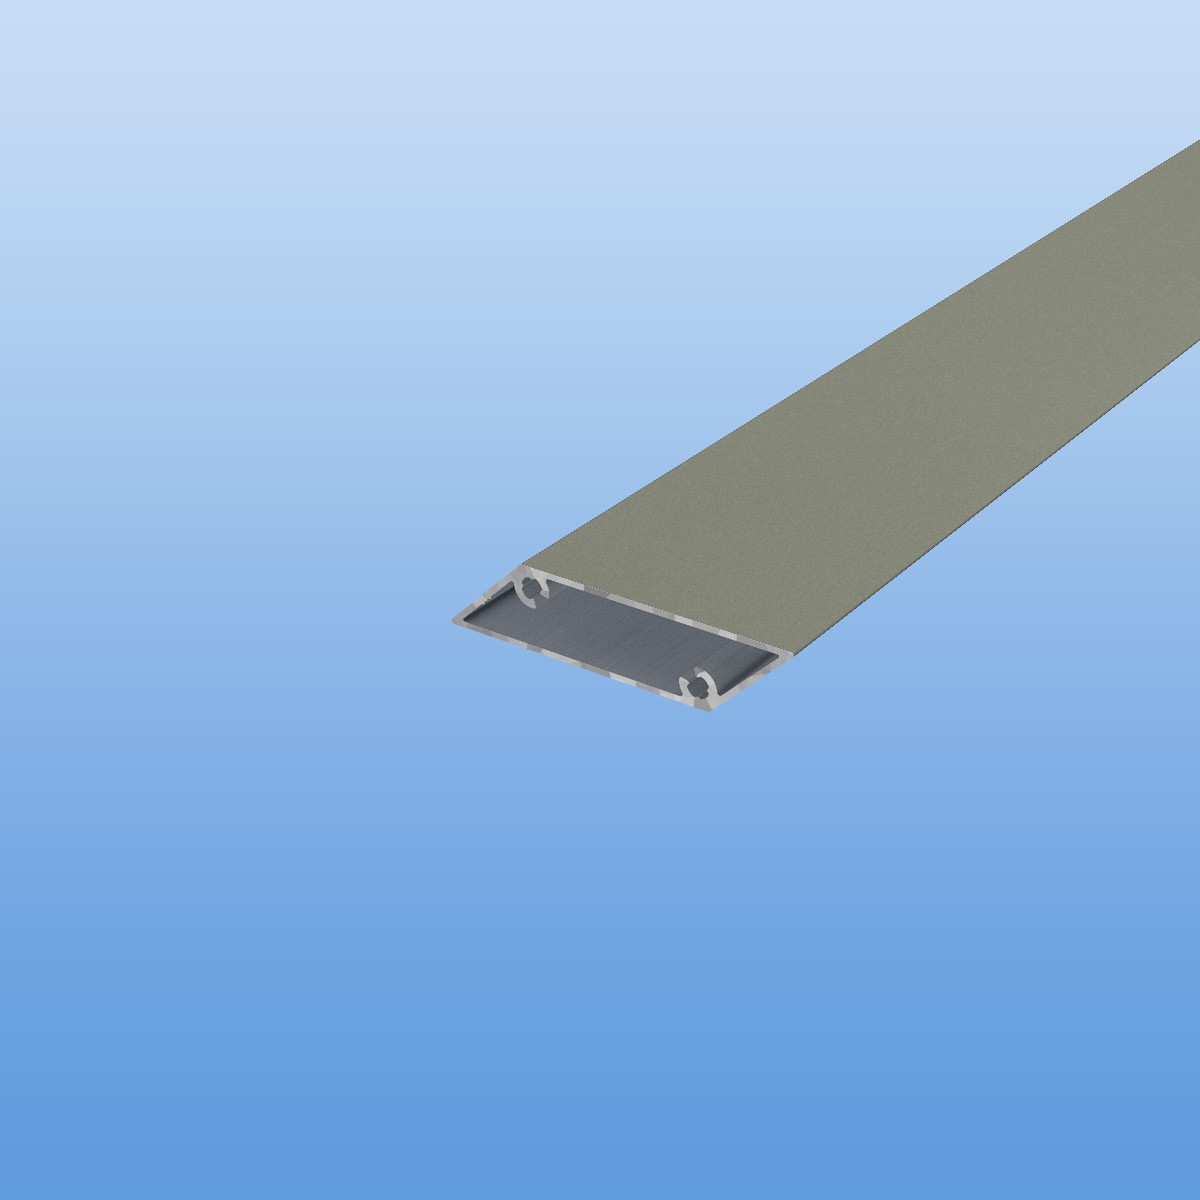 Rhombusprofil aus Aluminium 16mm in Grau (RAL 7030) - Sichtfläche 53mm